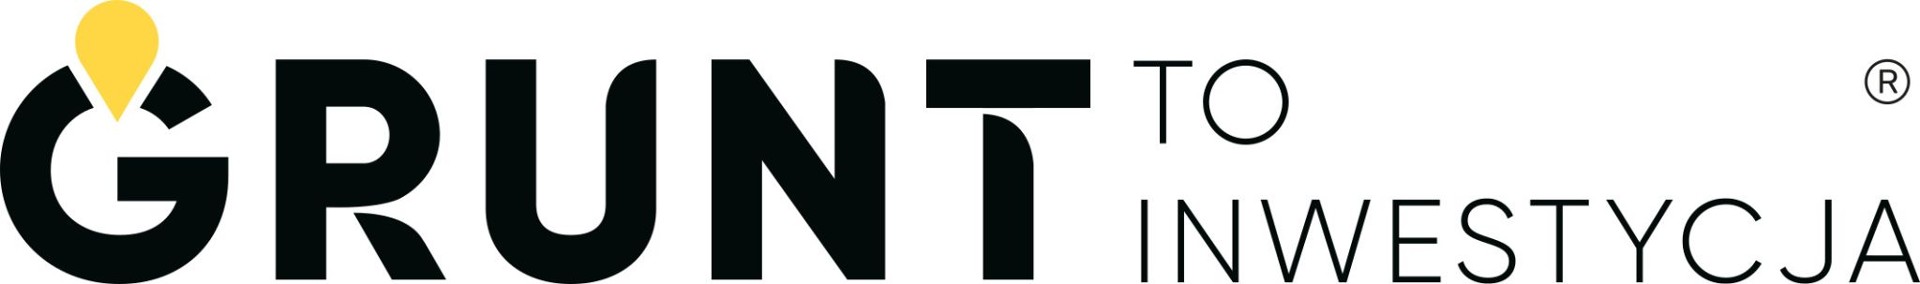 Logo Grunt to inwestycja